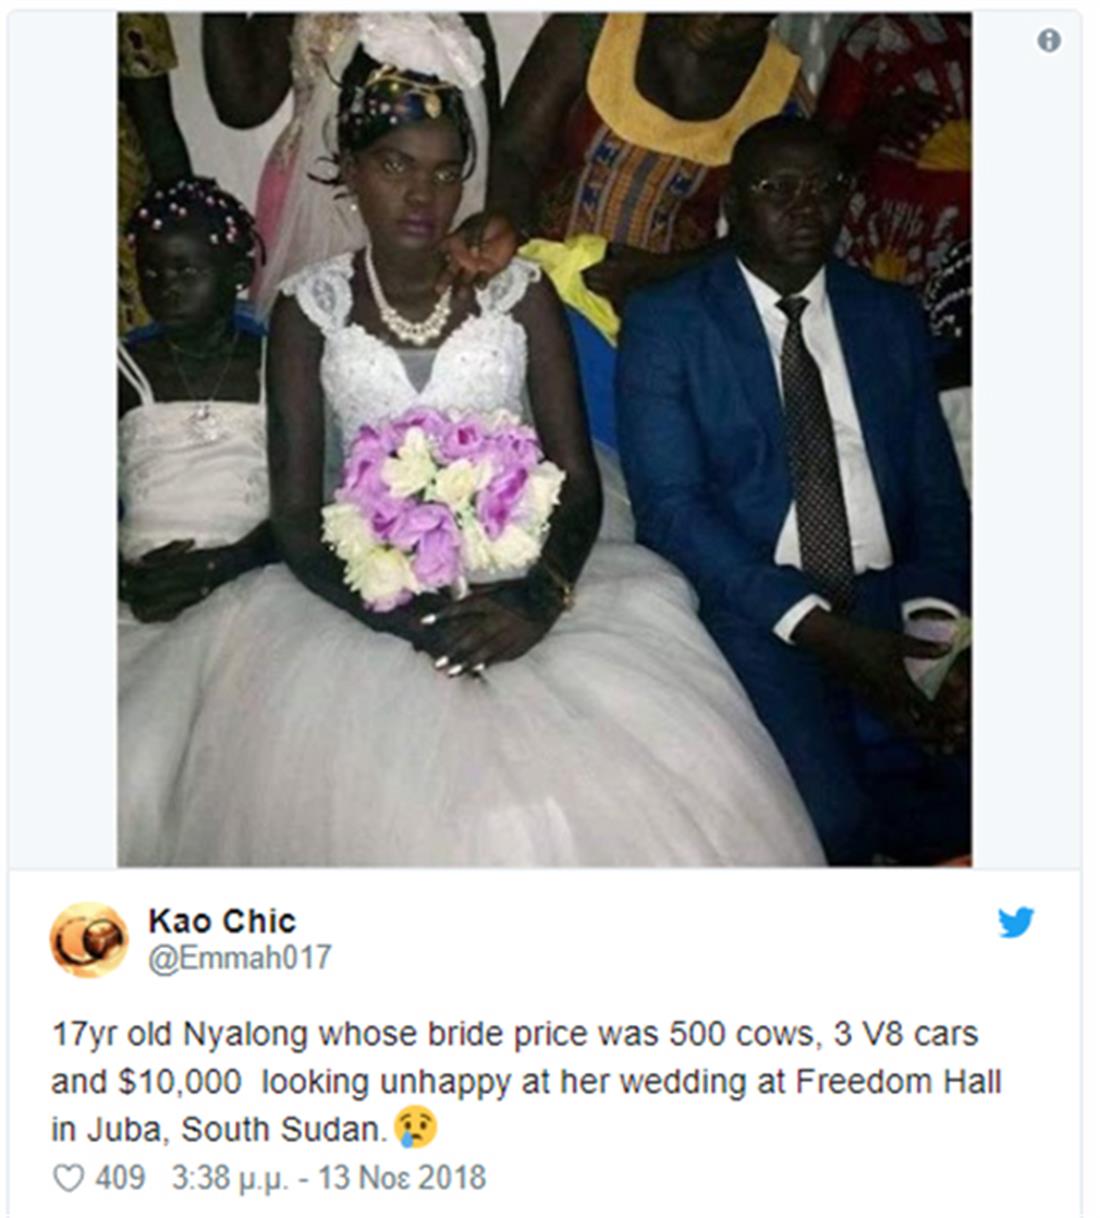 νύφη - Νότιο Σουδάν - δημοπρασία - facebook